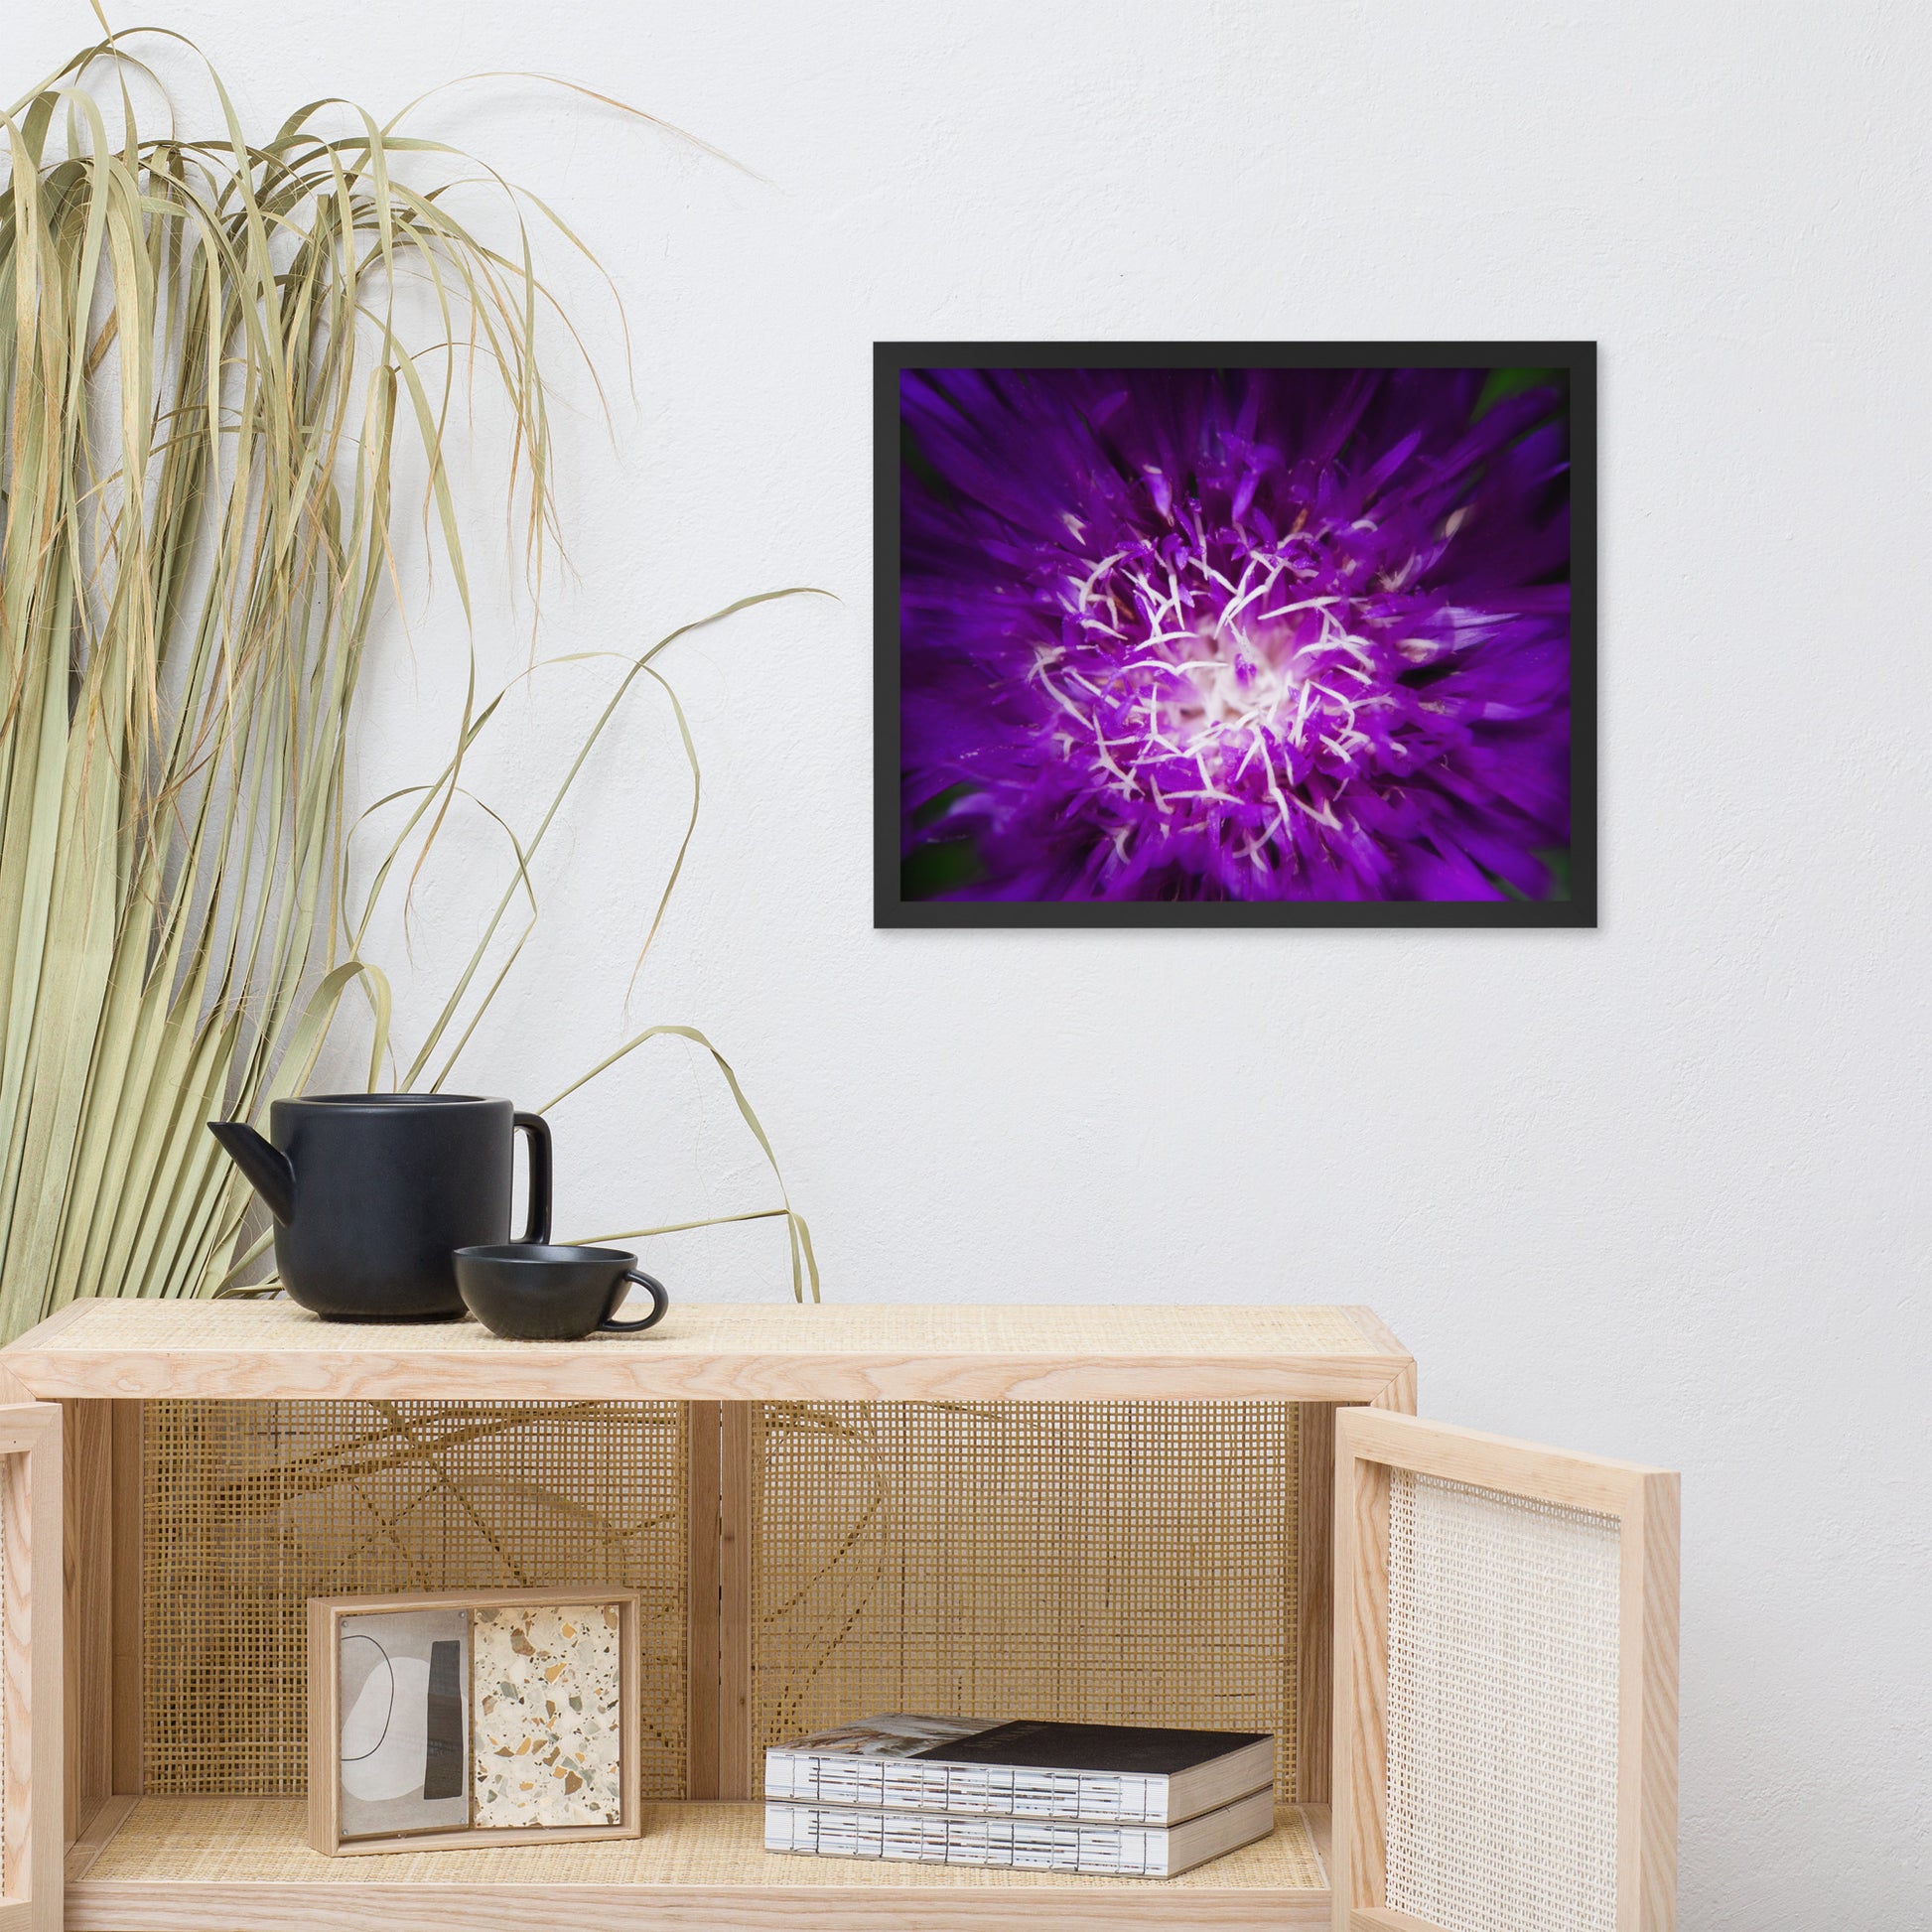 Living Room Art Modern: Purple Abstract Flower - Botanical / Floral / Flora / Flowers / Nature Photograph Framed Wall Art Print - Artwork - Wall Decor